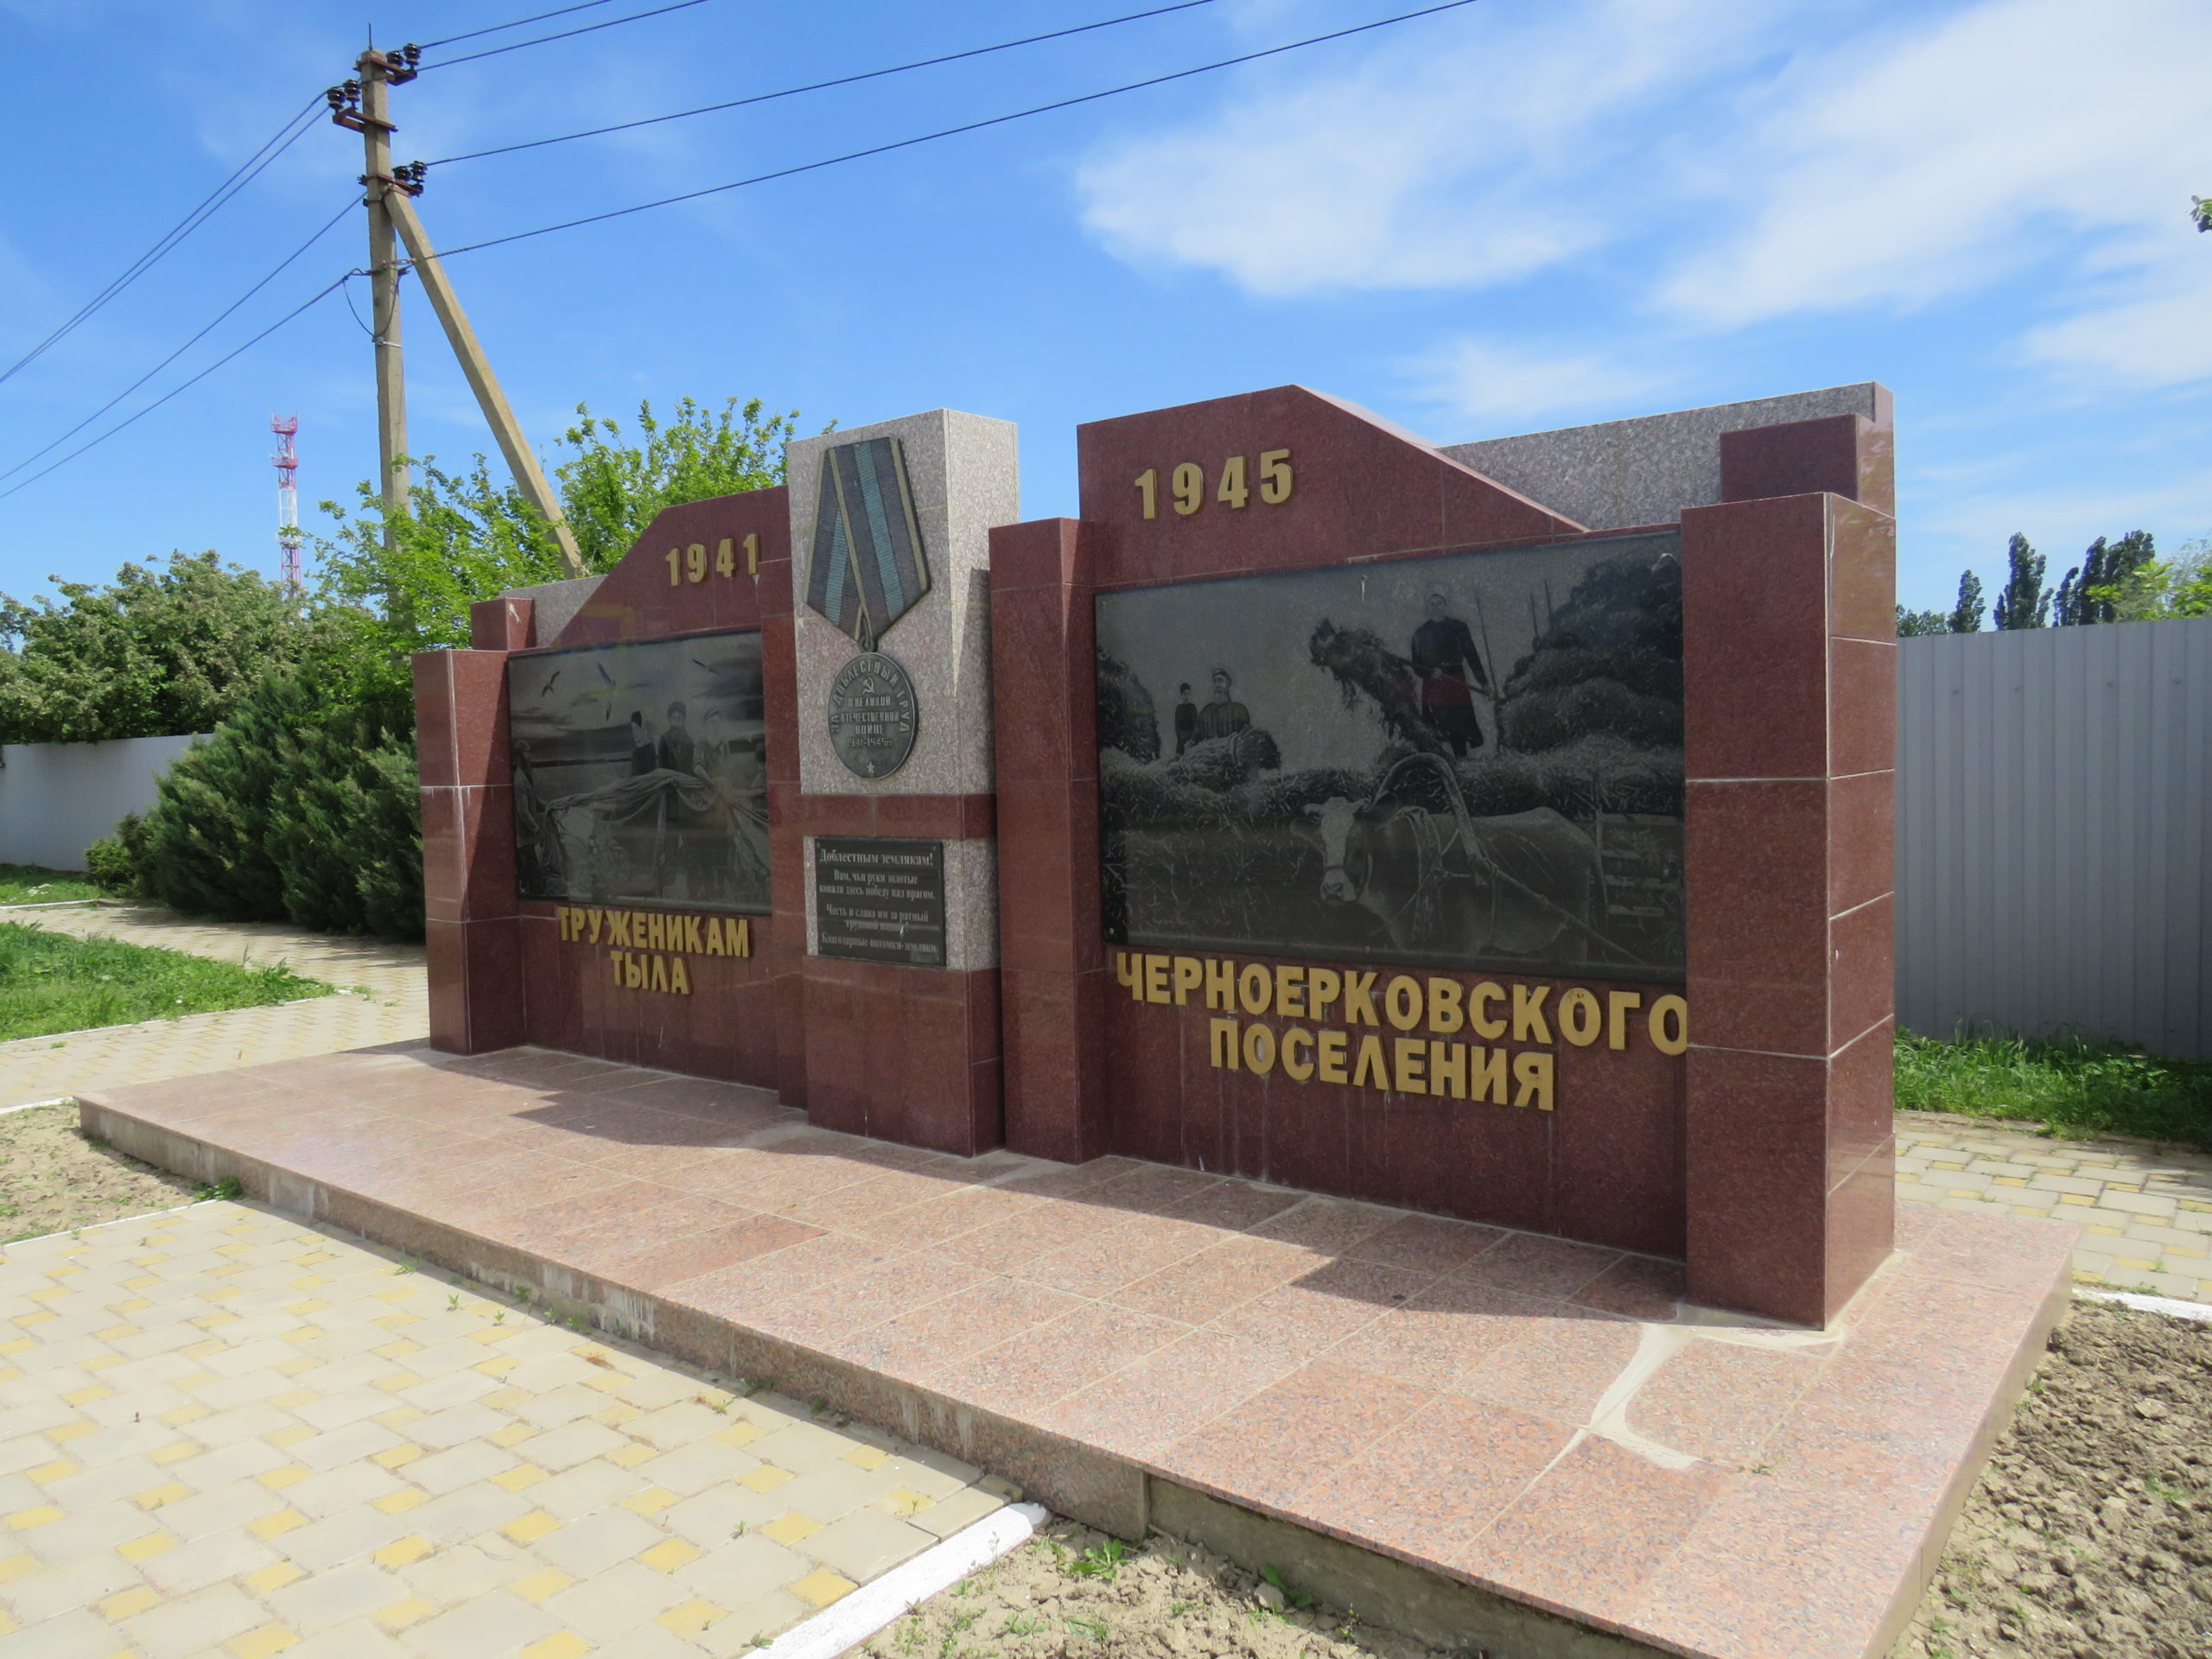 Станица черноерковская славянского района краснодарского края